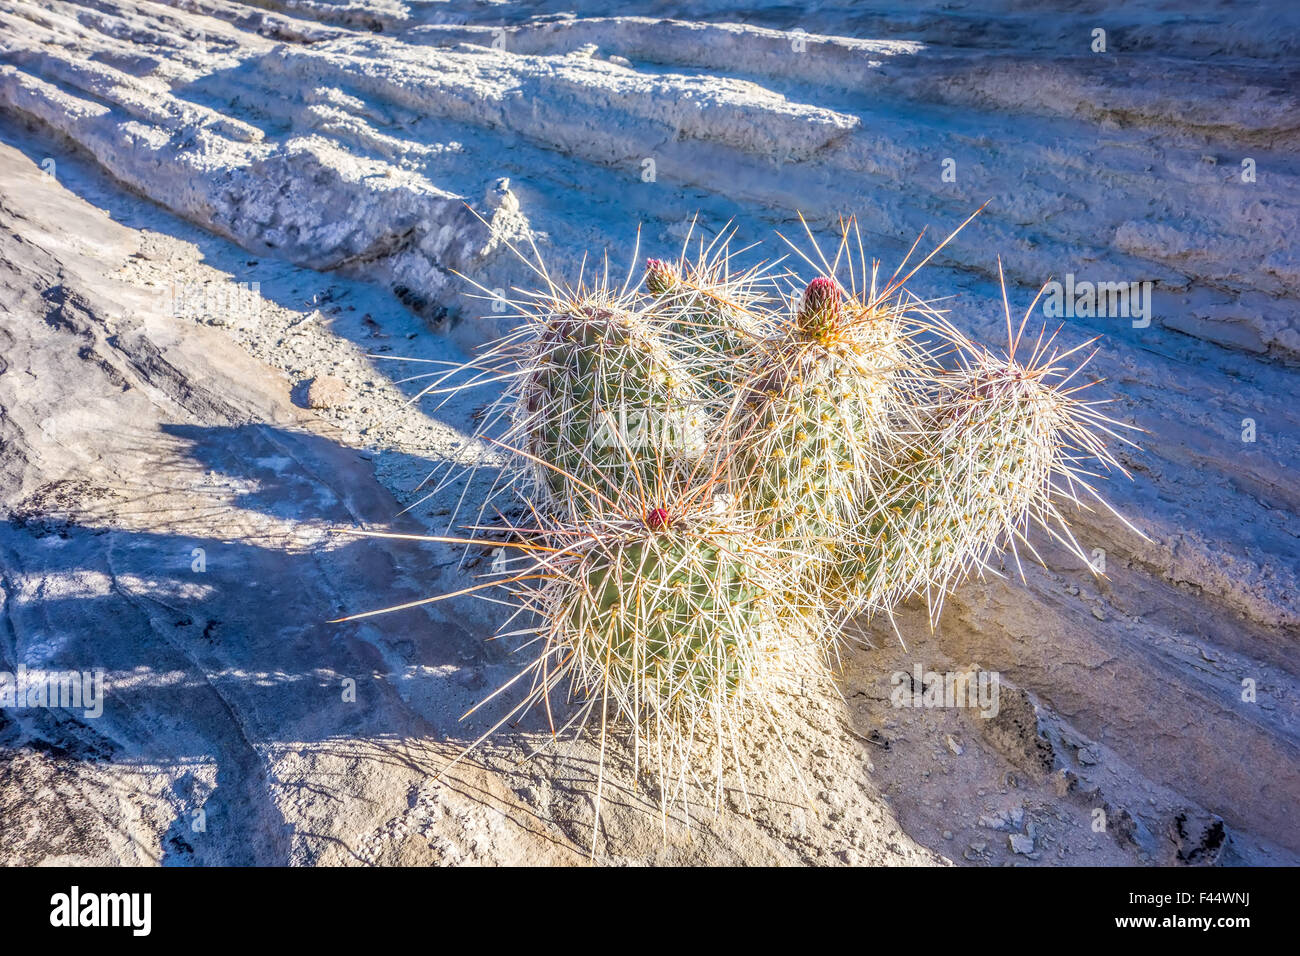 blooming cactus in arizona desert Stock Photo